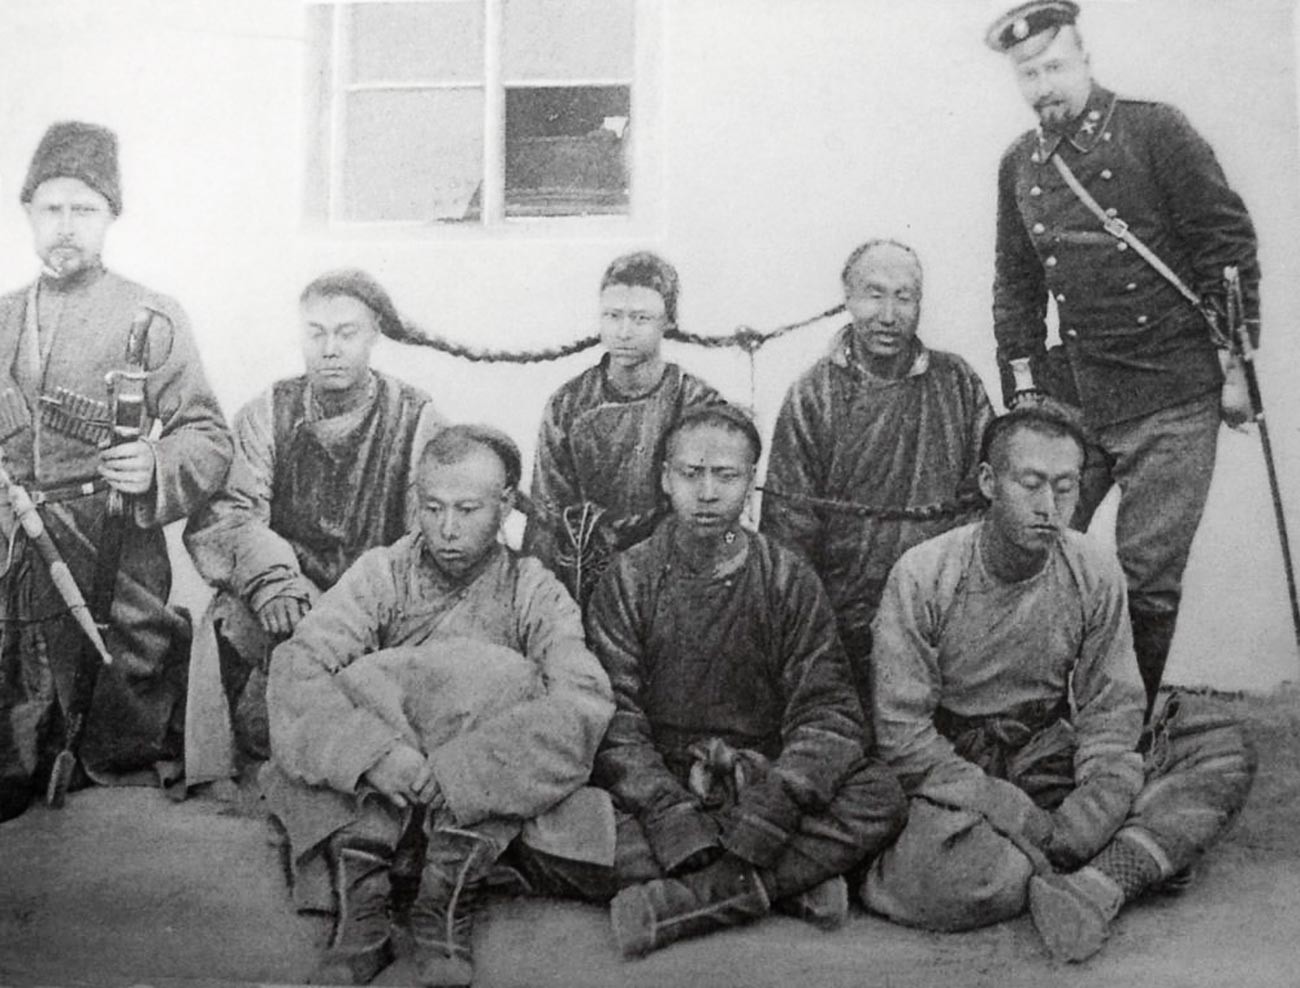 Pripadnici osiguranja Kineske istočne željeznice s grupom uhićenih hunhuza. Mandžurija, početak 20. st.